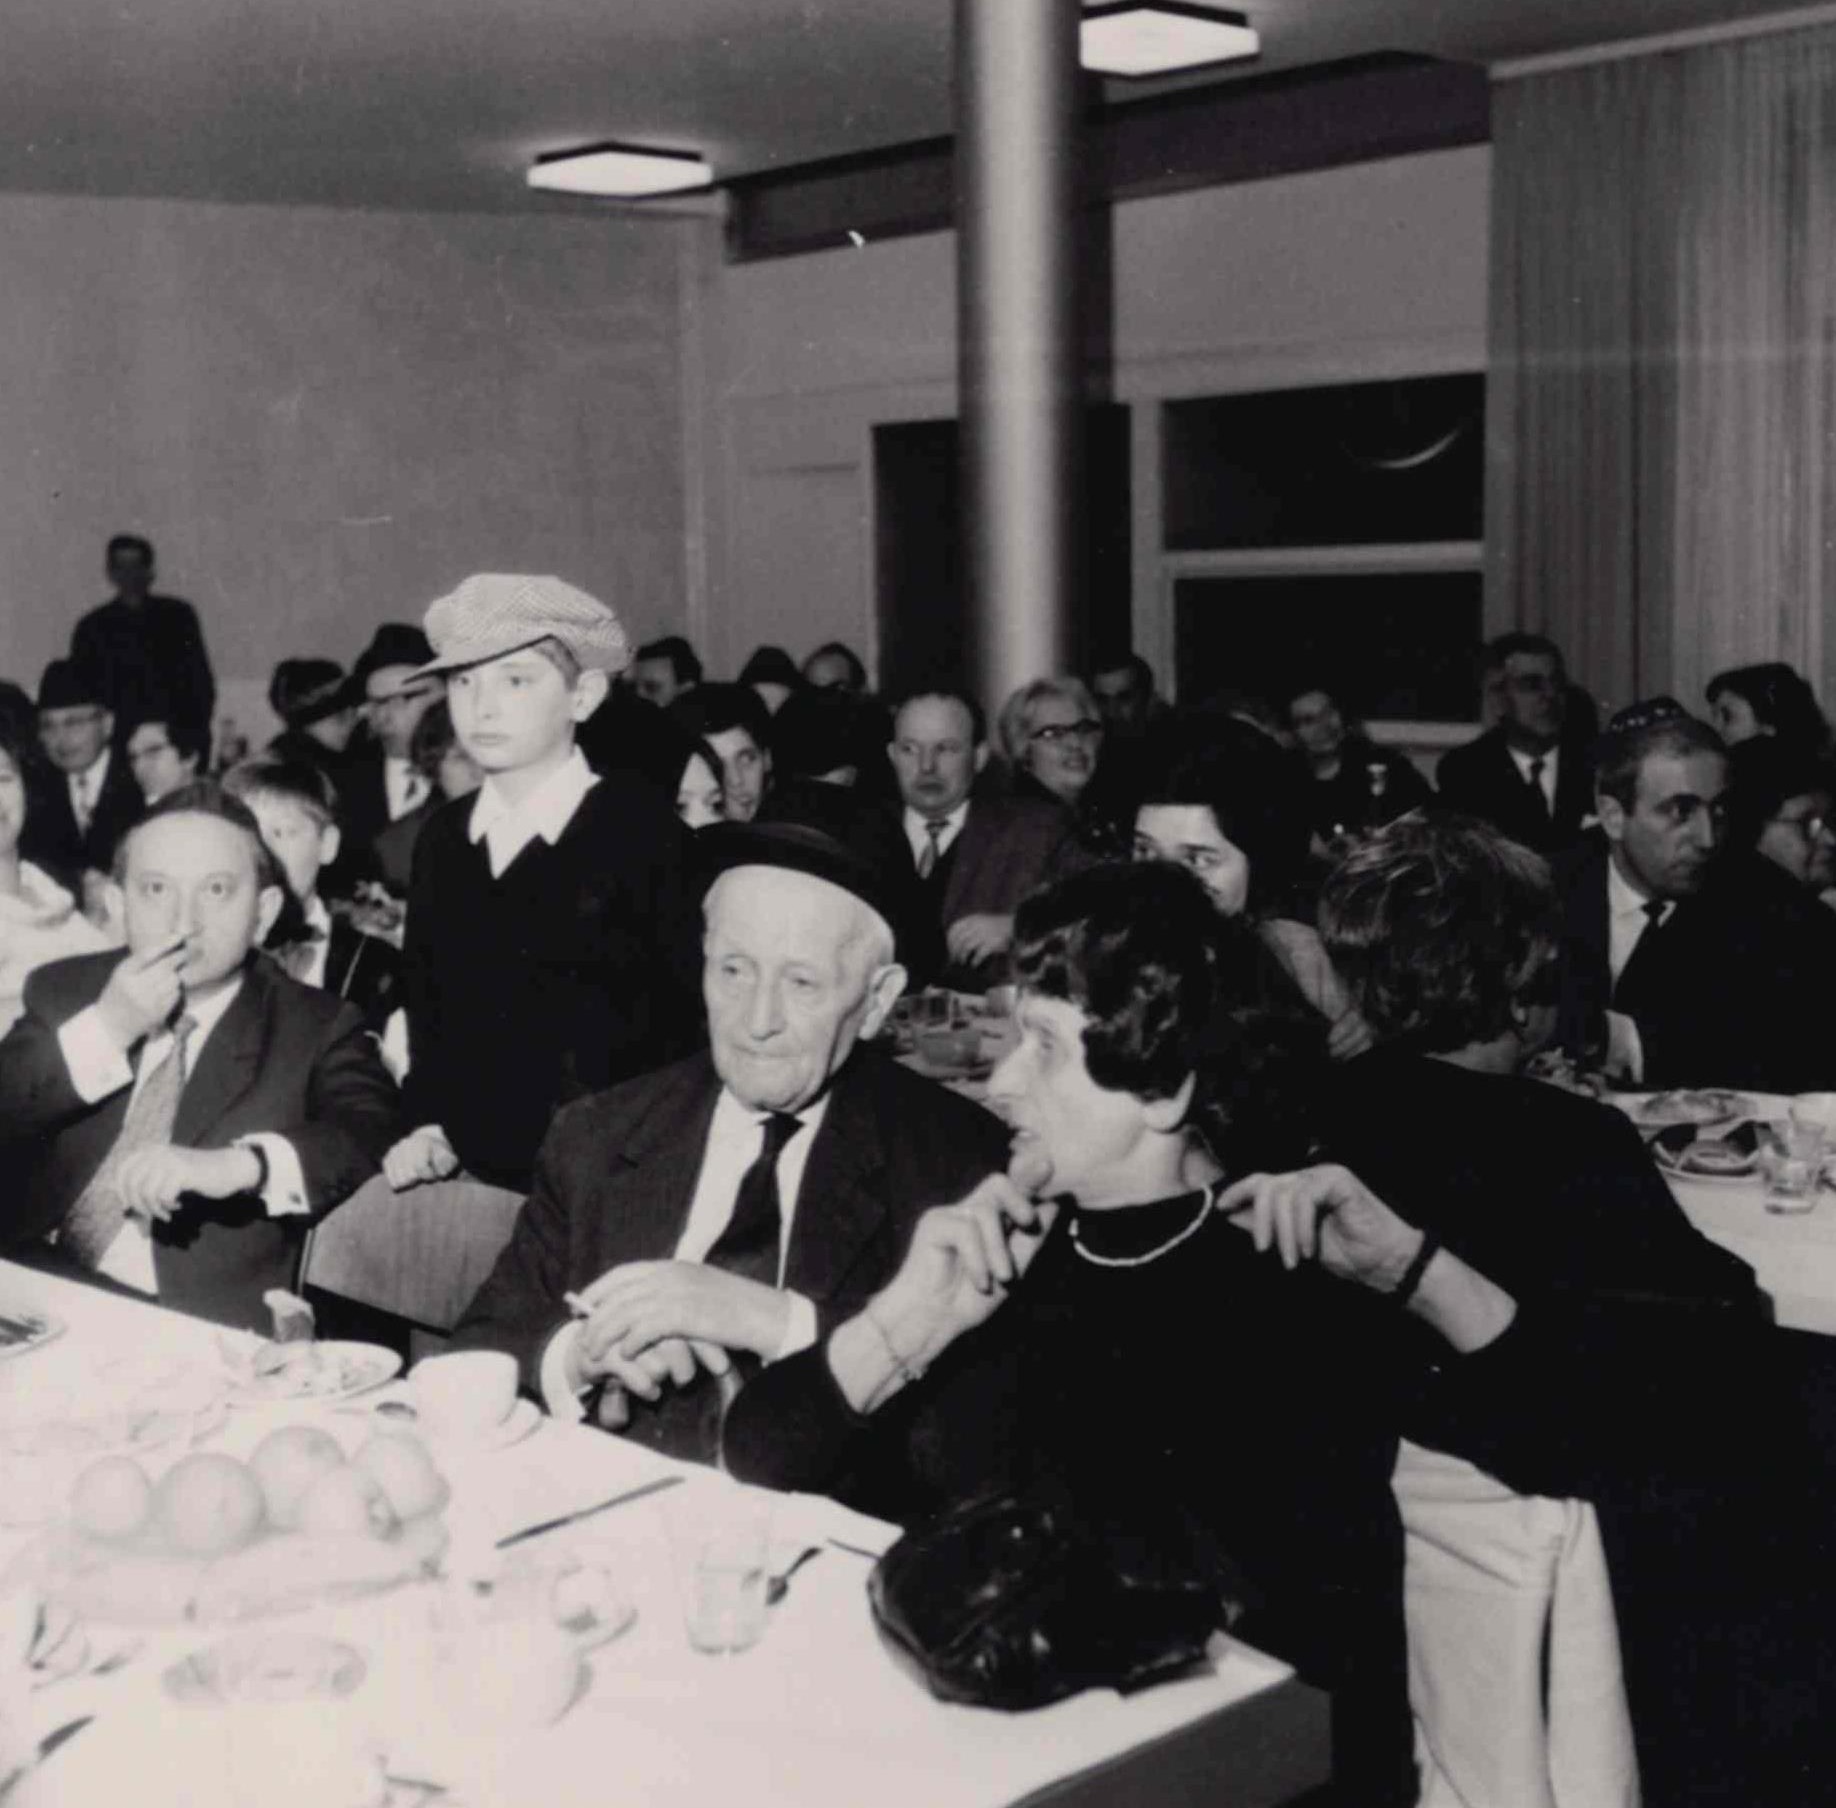 Événement communautaire dans les années 1960. Collection de la communauté juive de Wiesbaden